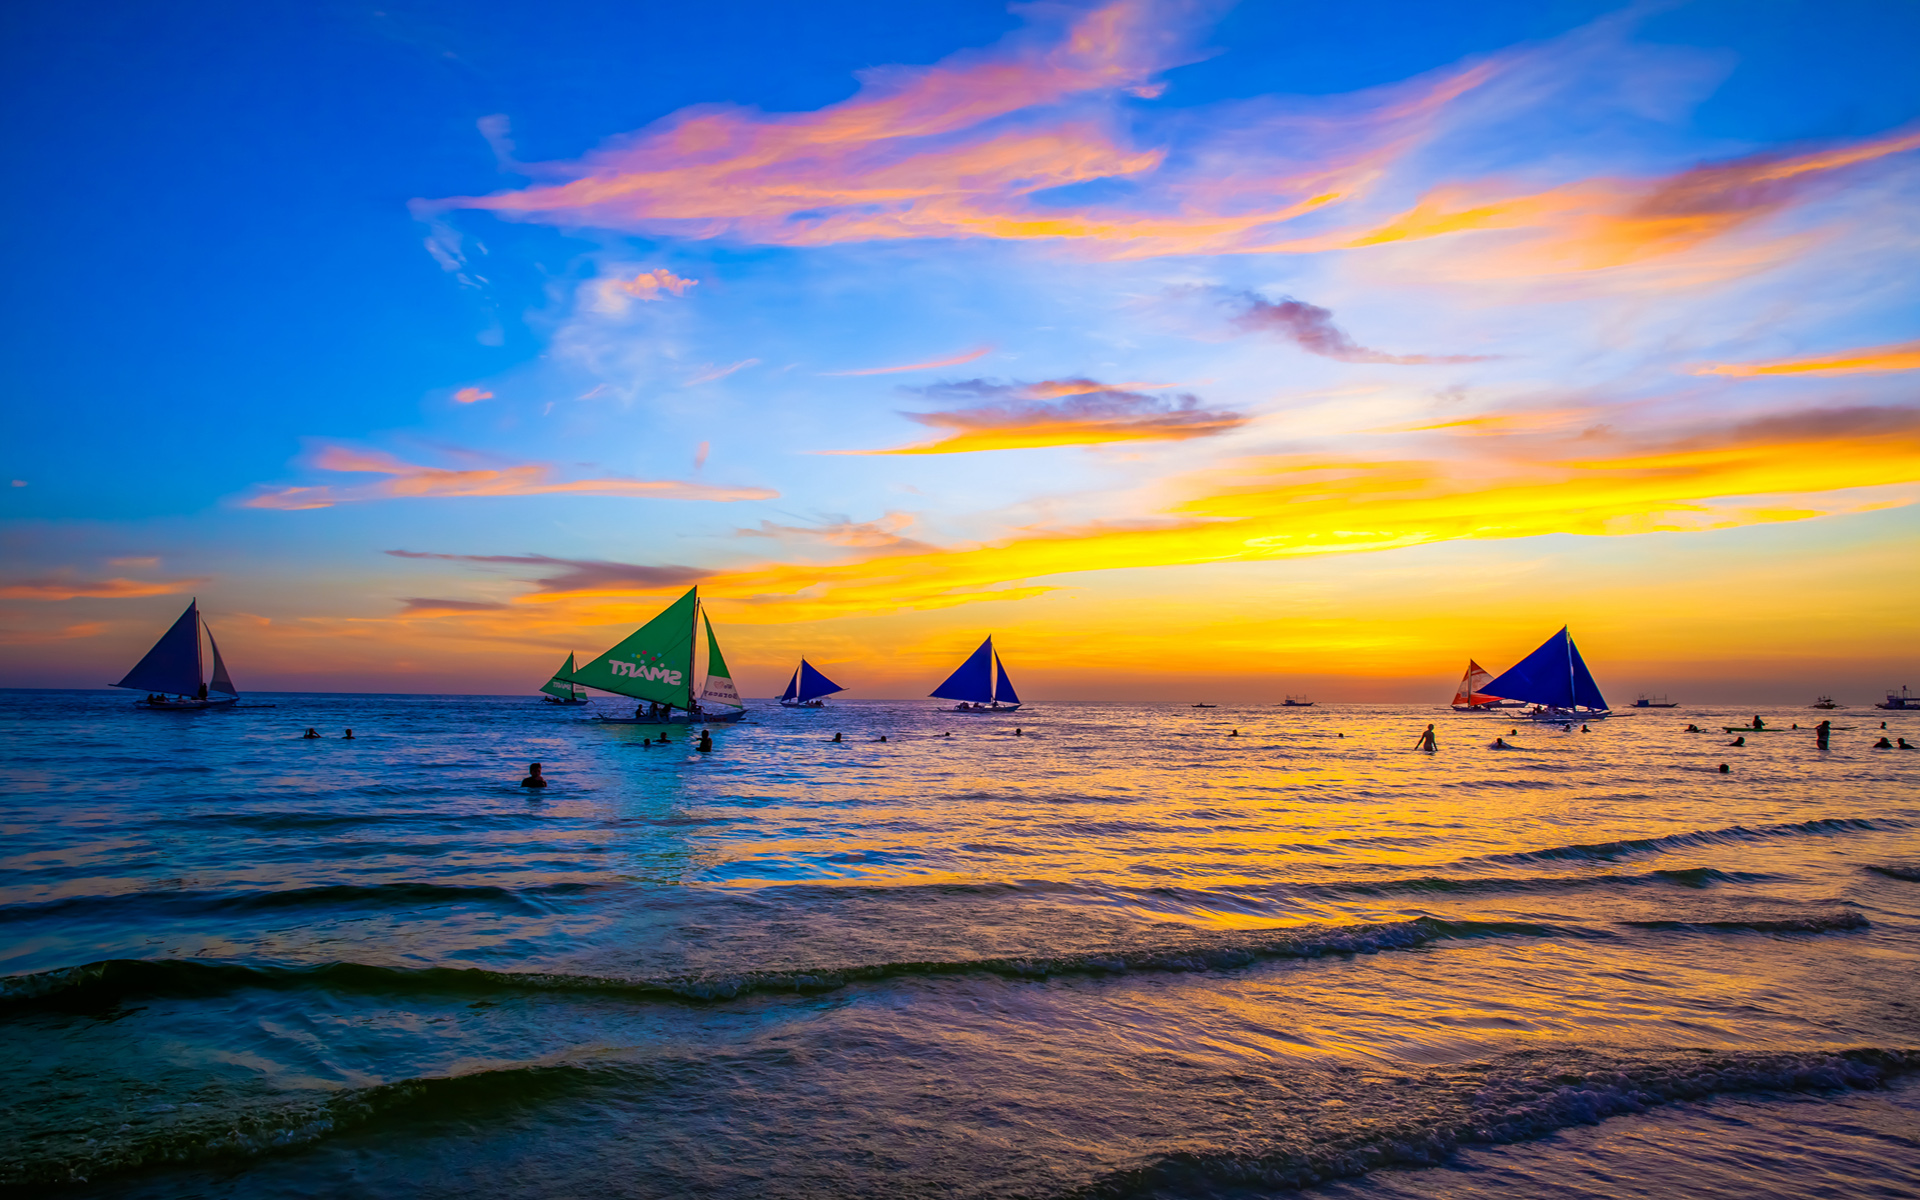 落日风景图片 菲律宾长滩岛日落晚霞风景图片